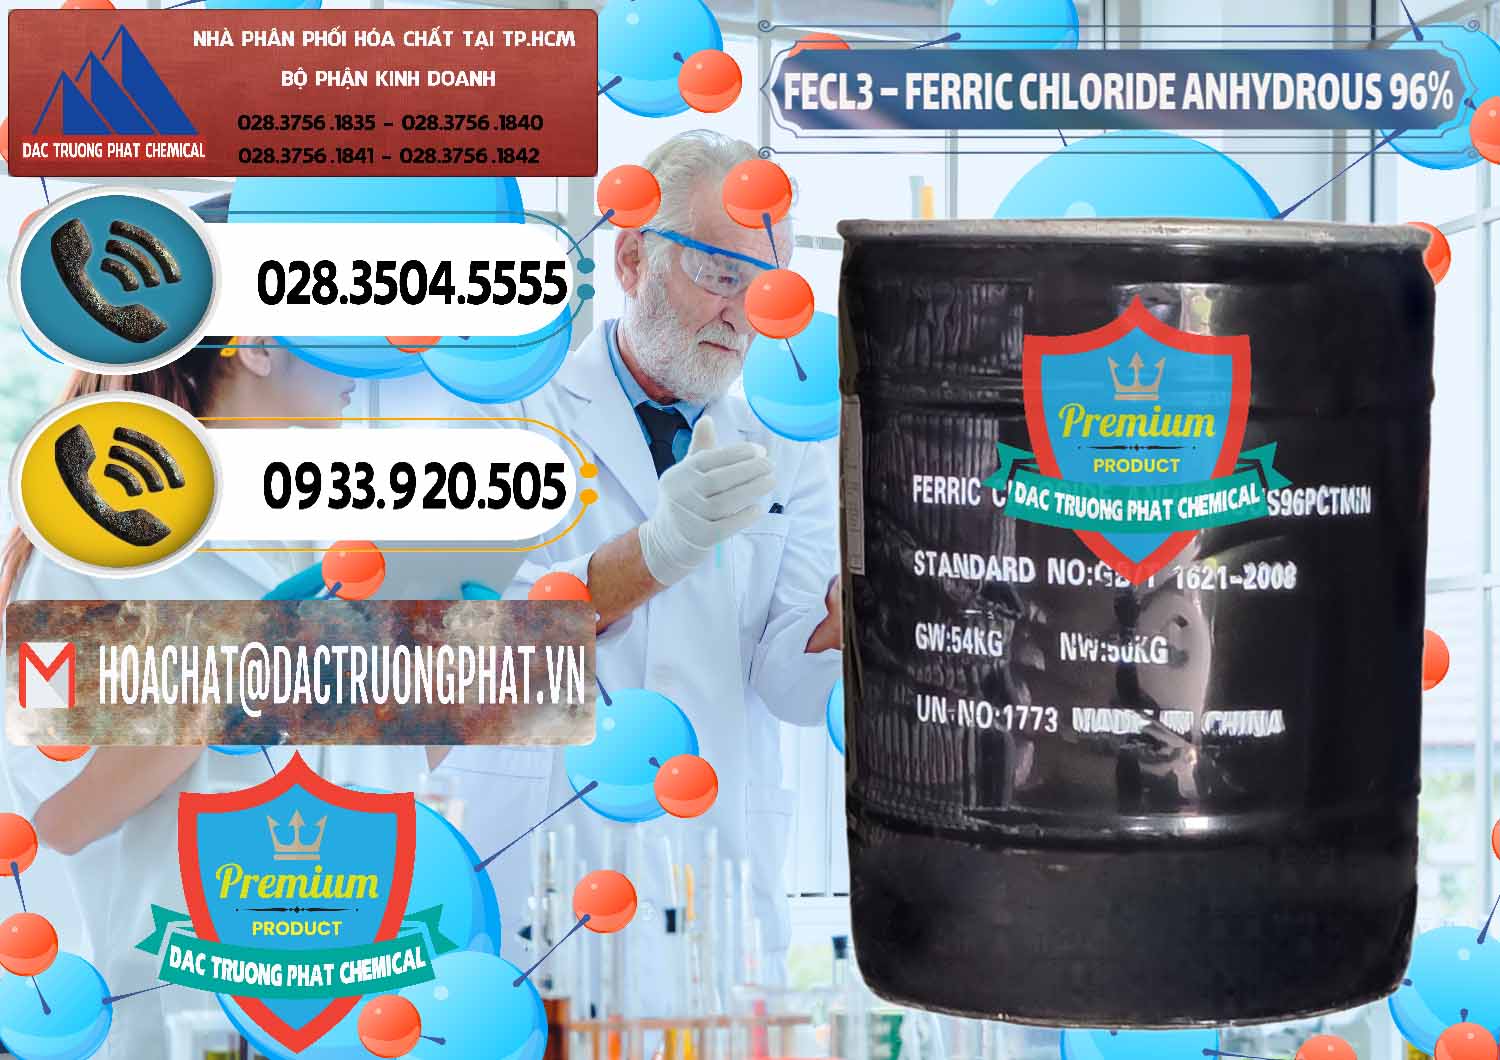 Nơi chuyên nhập khẩu và bán FECL3 – Ferric Chloride Anhydrous 96% Trung Quốc China - 0065 - Chuyên kinh doanh và cung cấp hóa chất tại TP.HCM - hoachatdetnhuom.vn